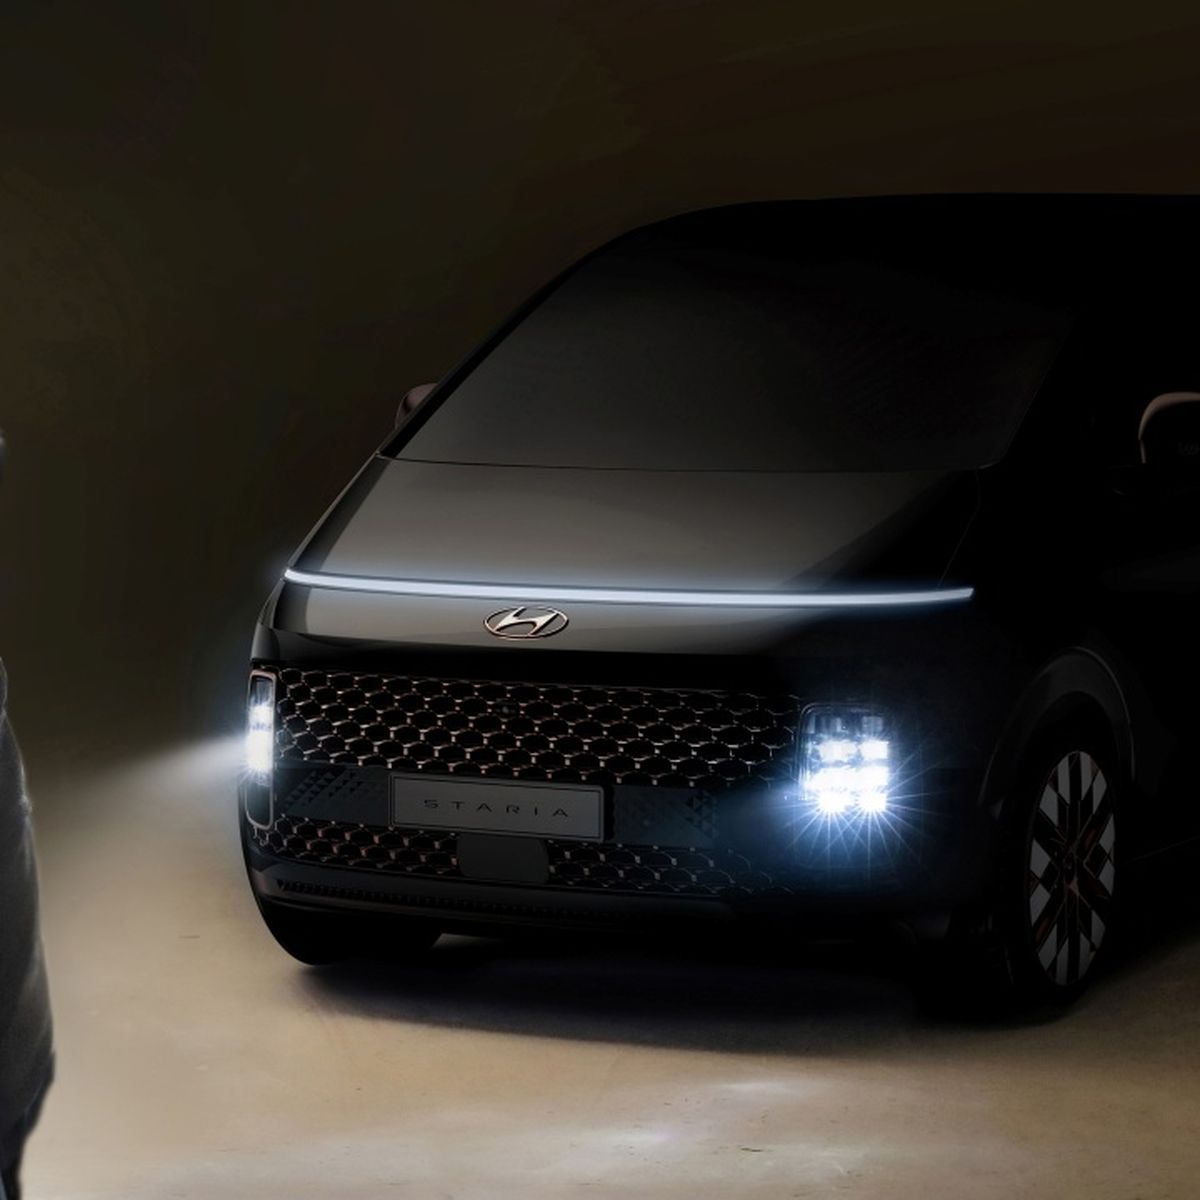 Probamos el inmenso Hyundai Staria, el futurista monovolumen en el